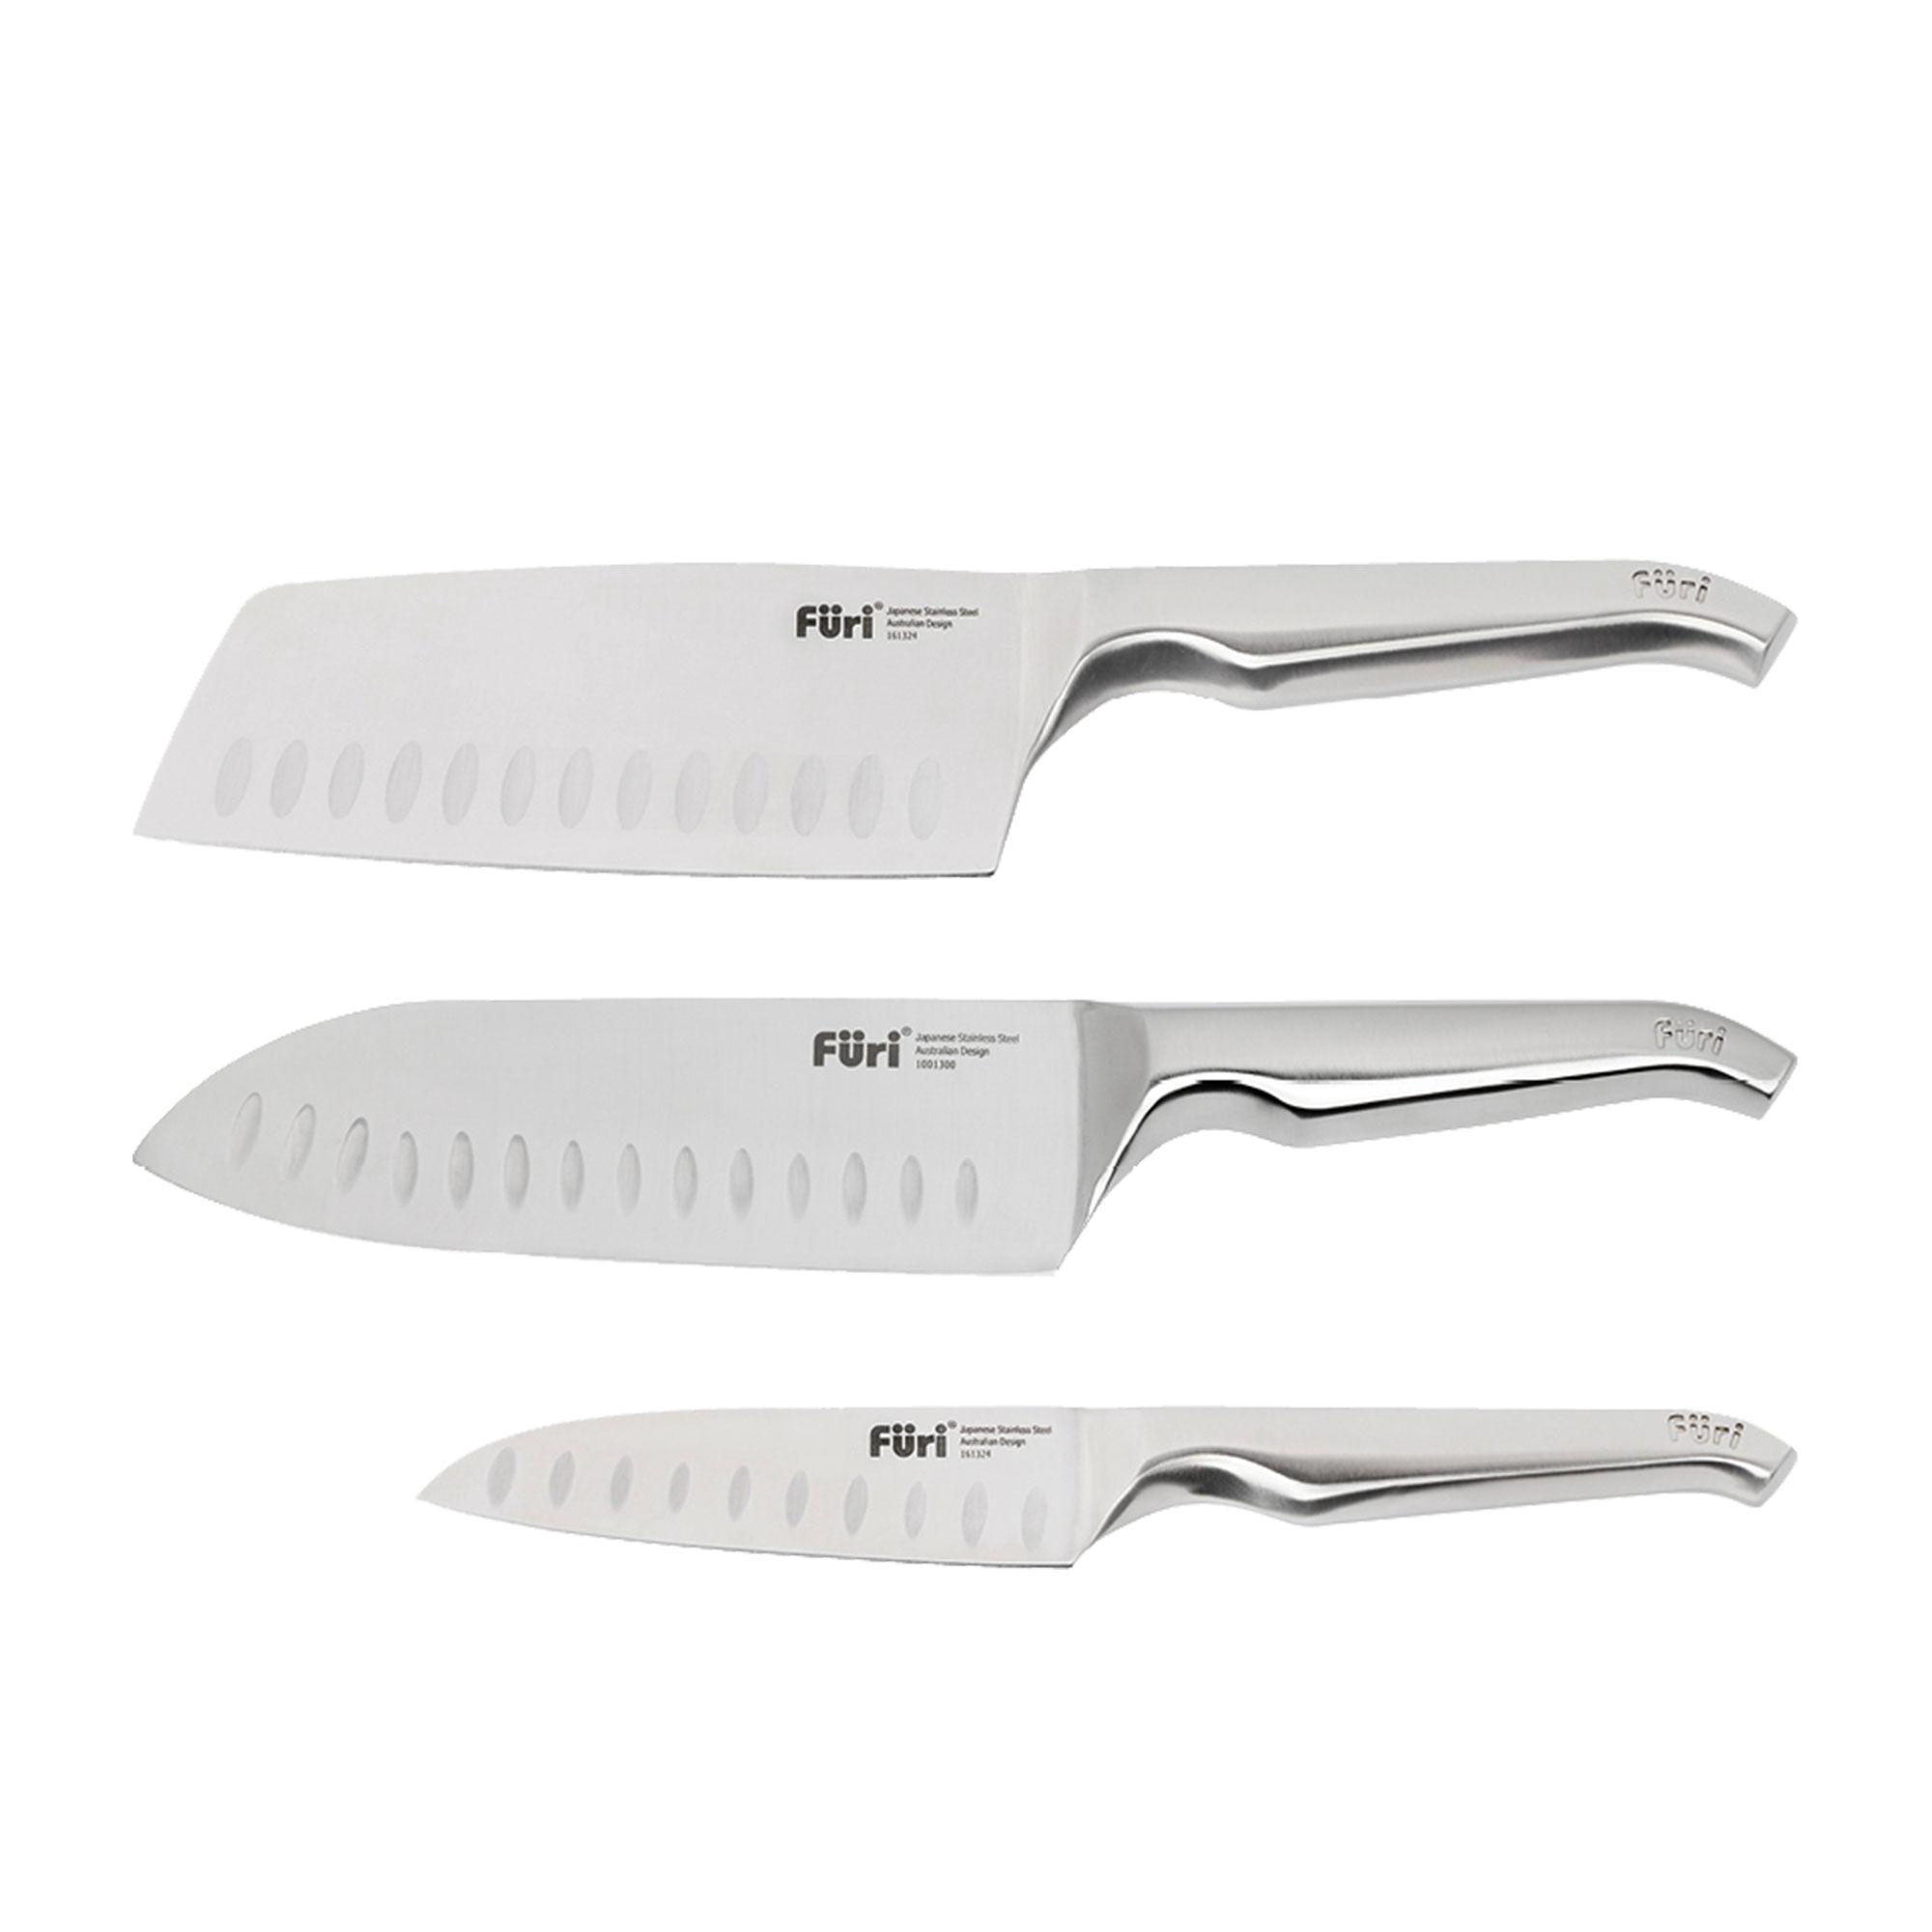 Furi Pro 3pc Asian Knife Set Image 4